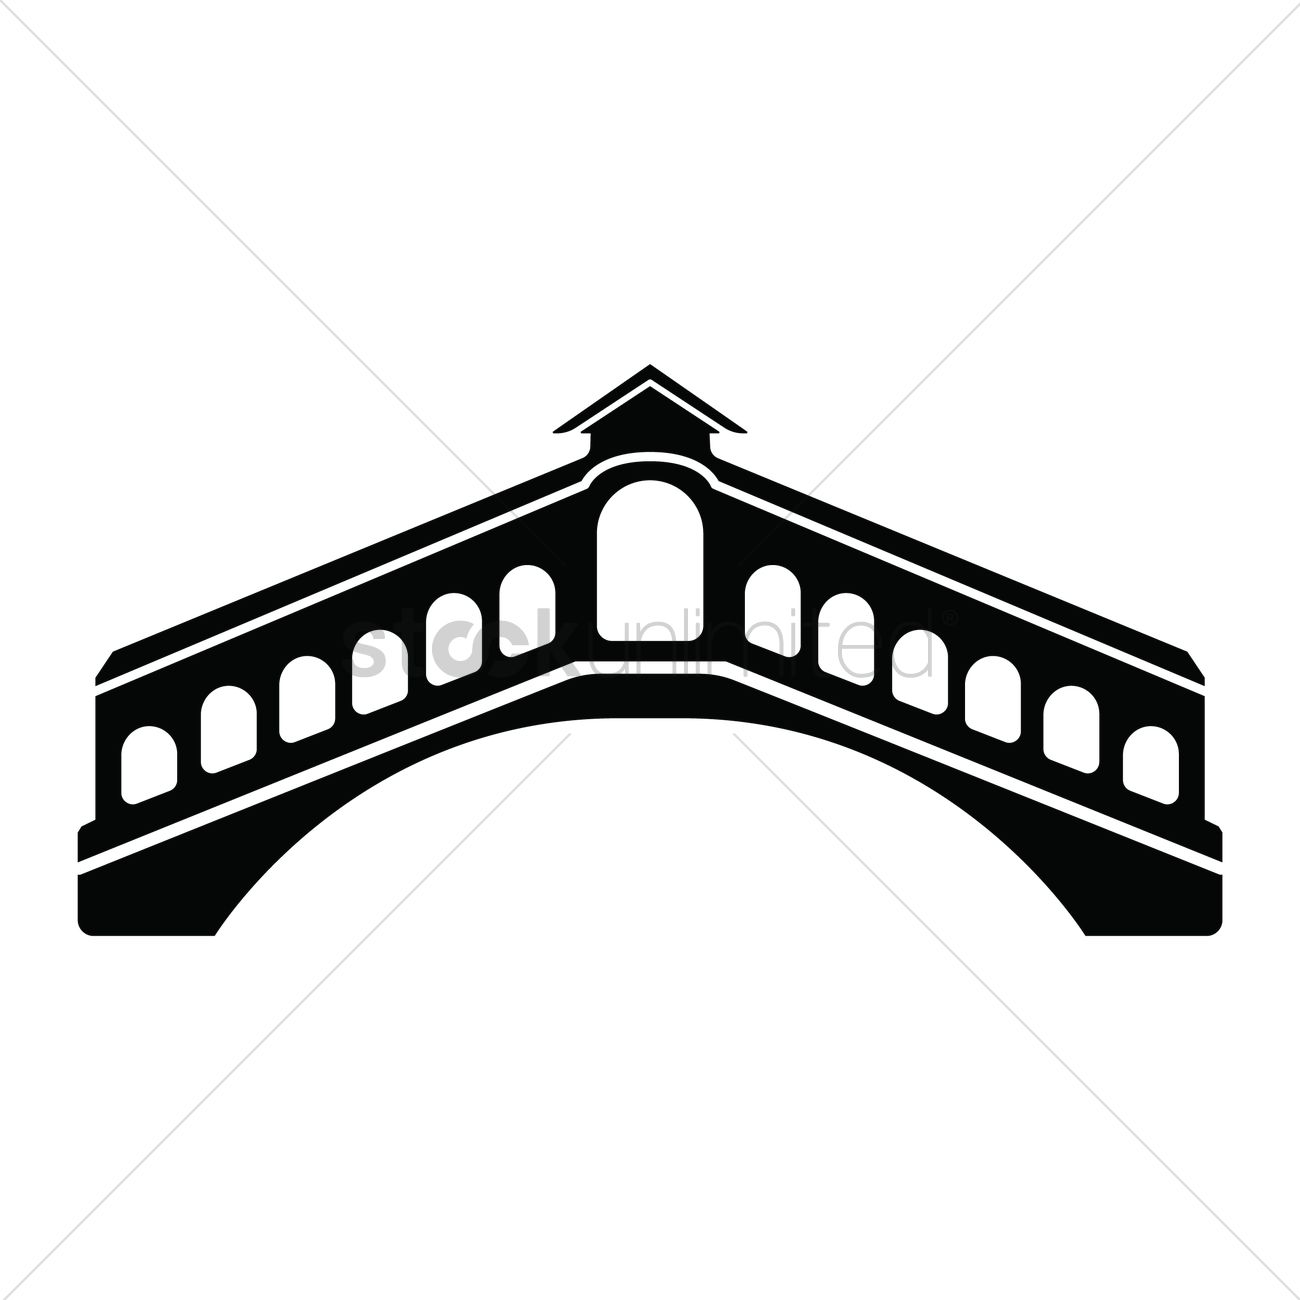 Rialto bridge logo